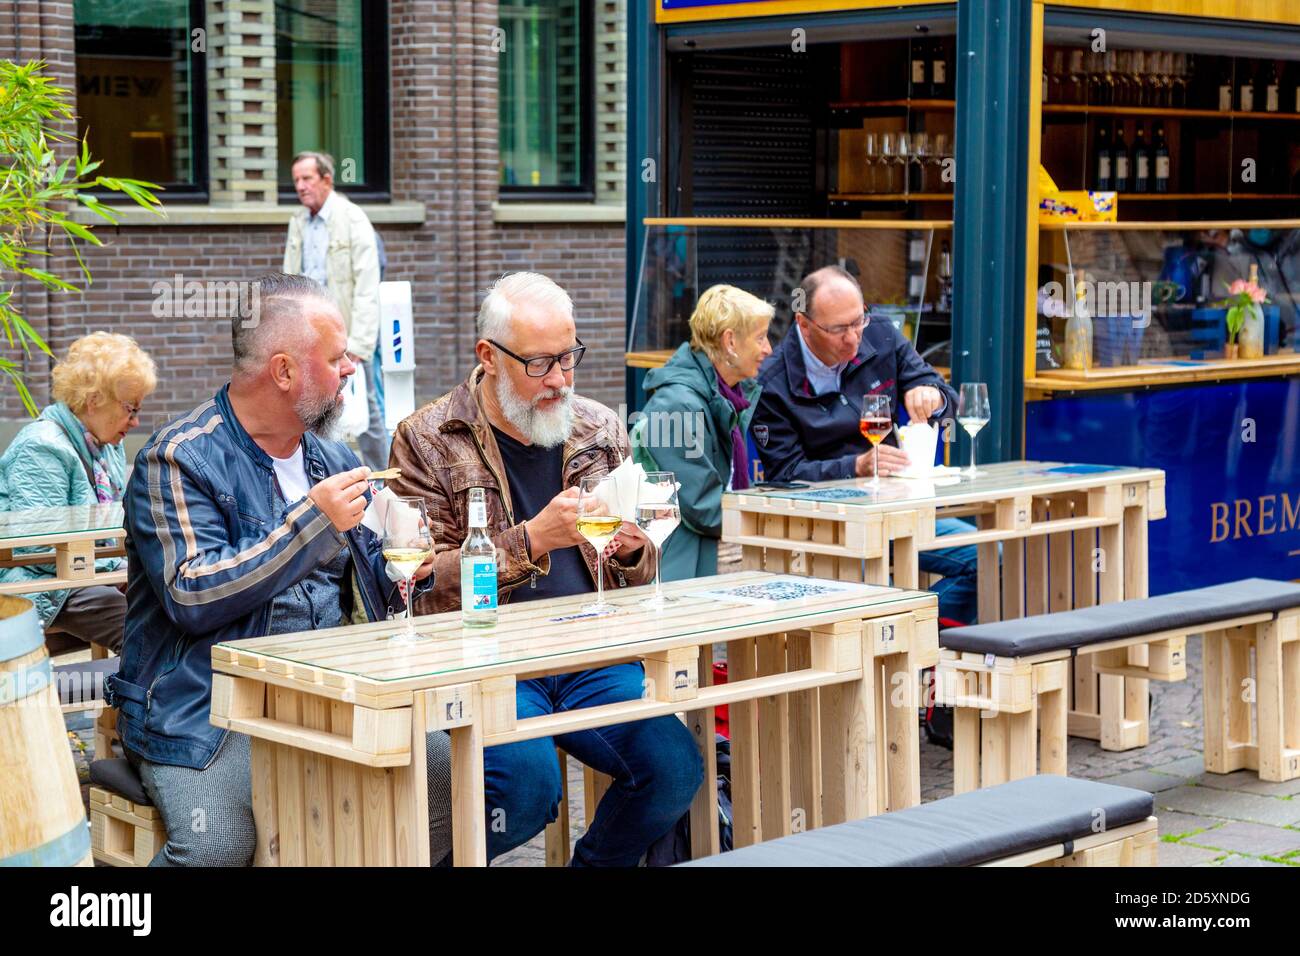 Menschen, die Wein trinken und im Freien am Weinkarton-Stand auf dem Marktplatz in Bremen essen Stockfoto